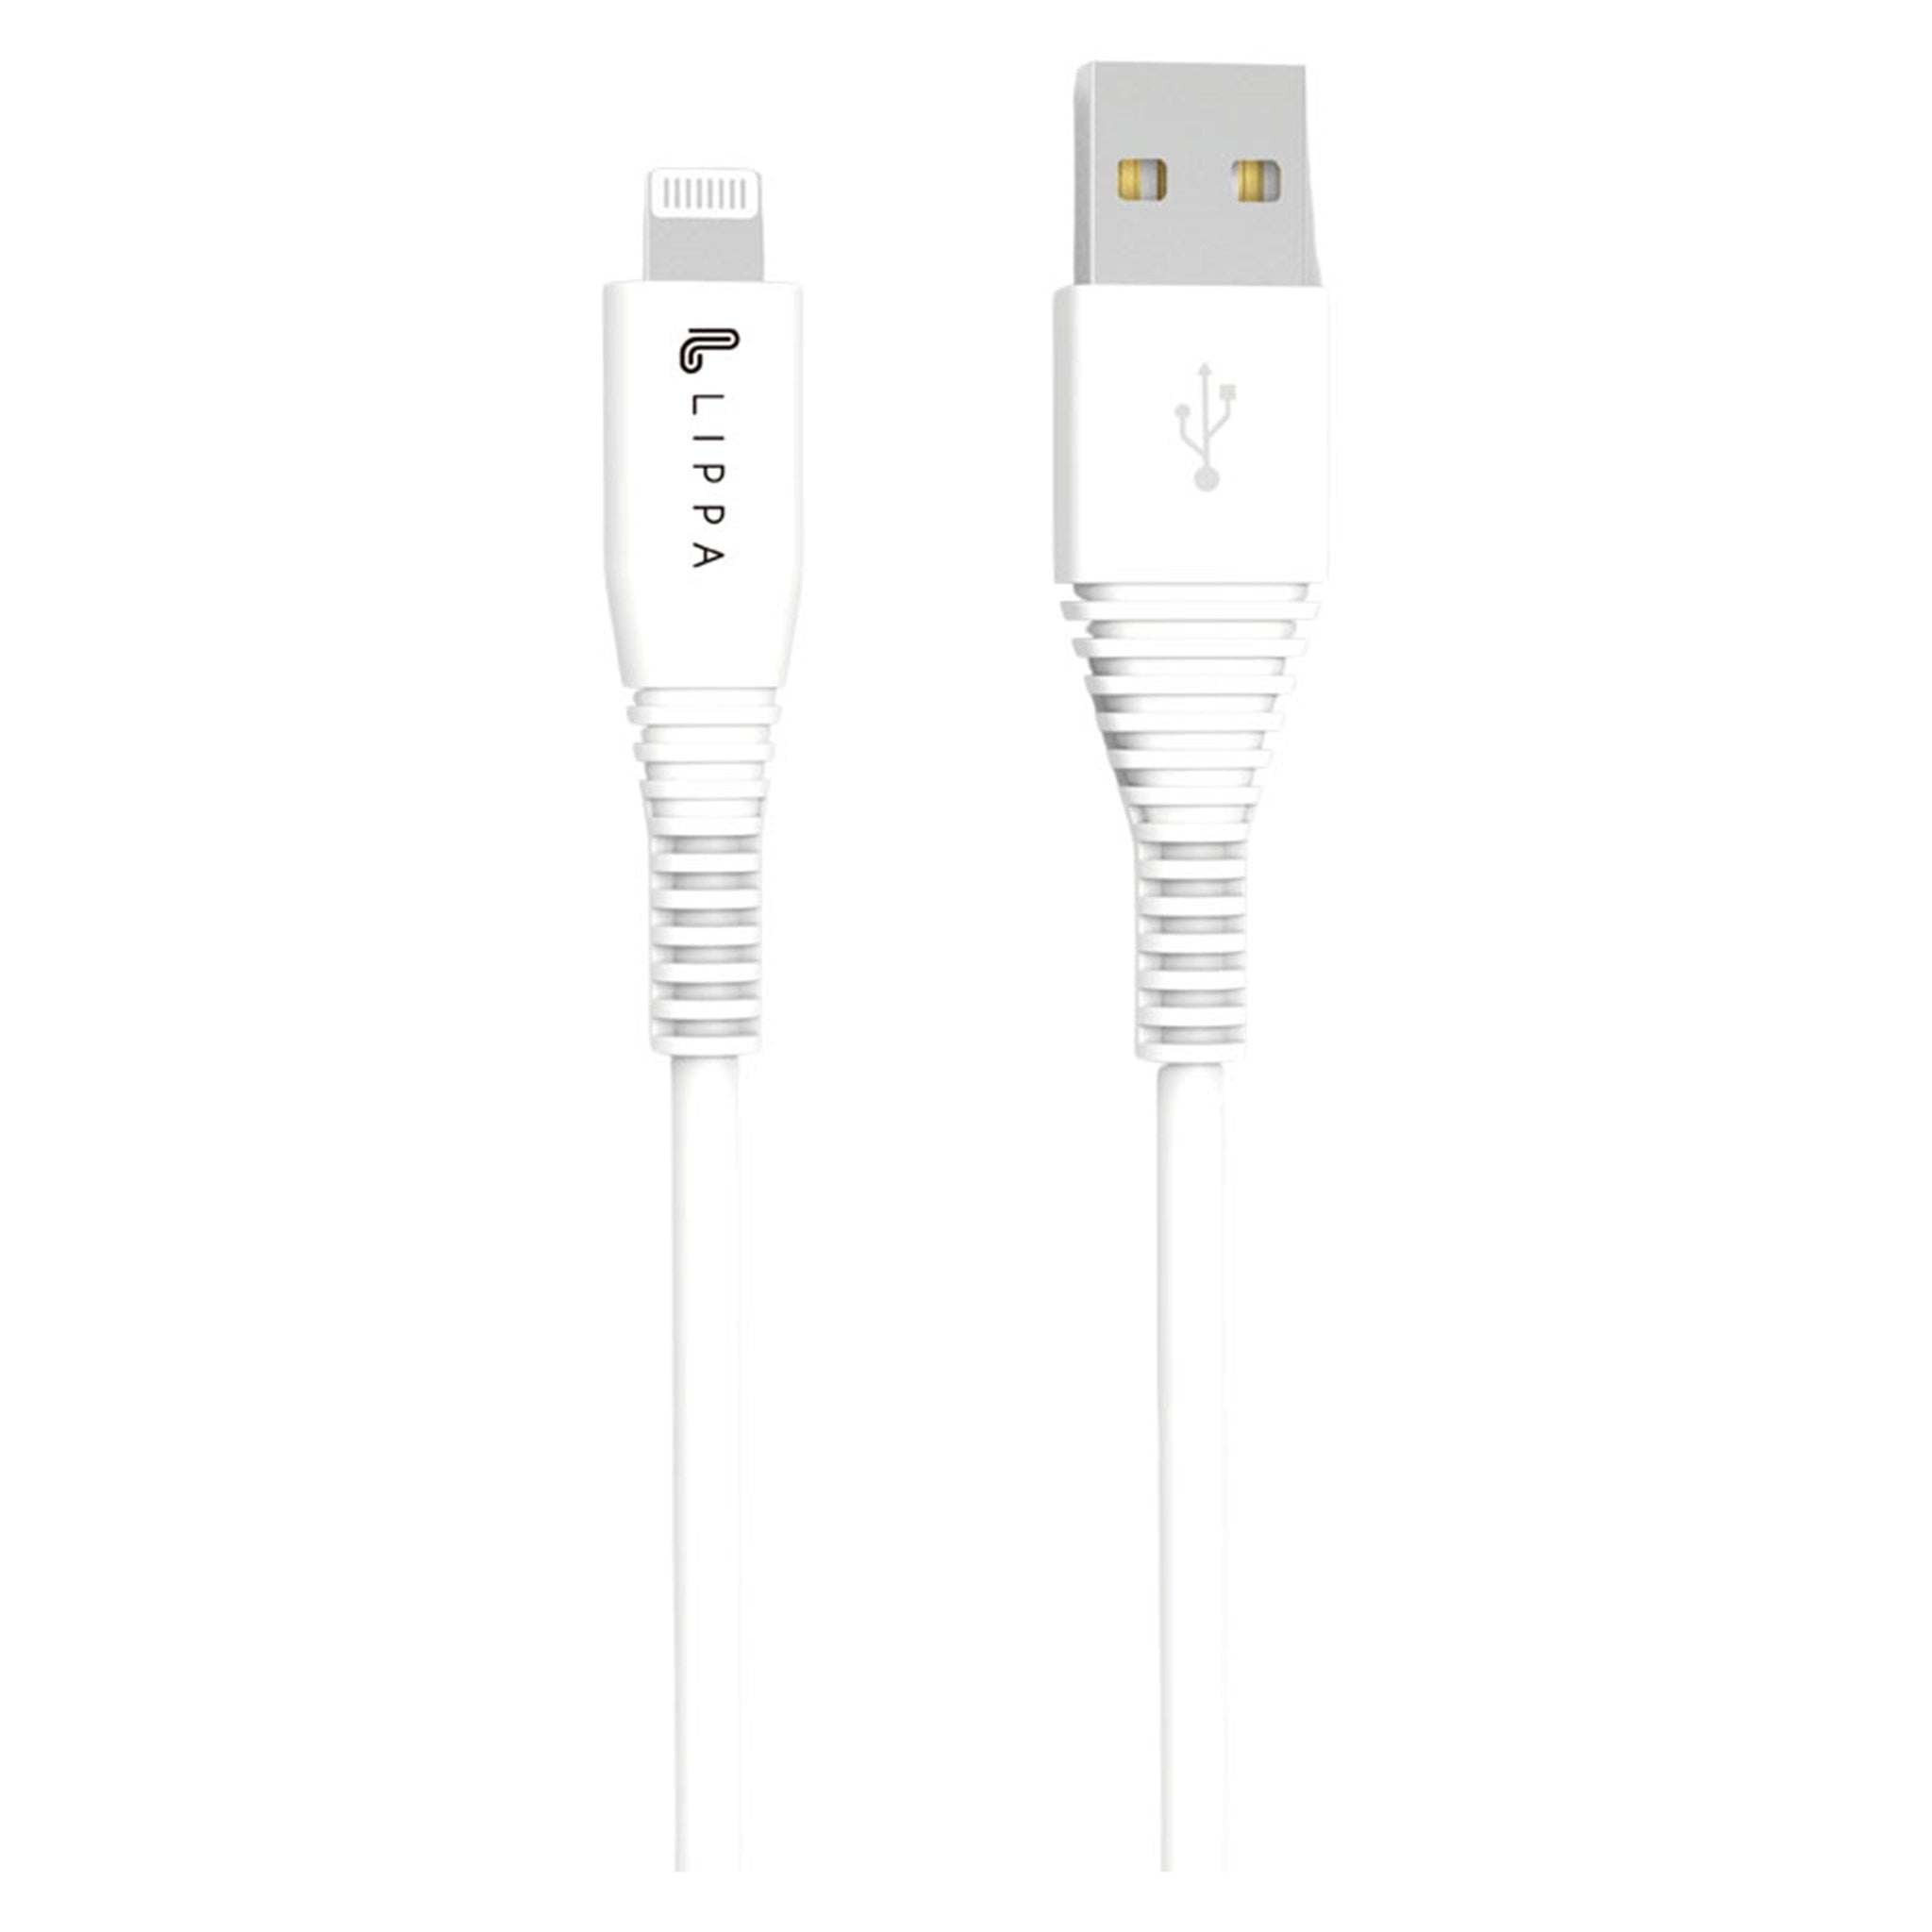 Billede af Lippa USB-A til MFi kabel 1m, Hvid hos Lippa.dk